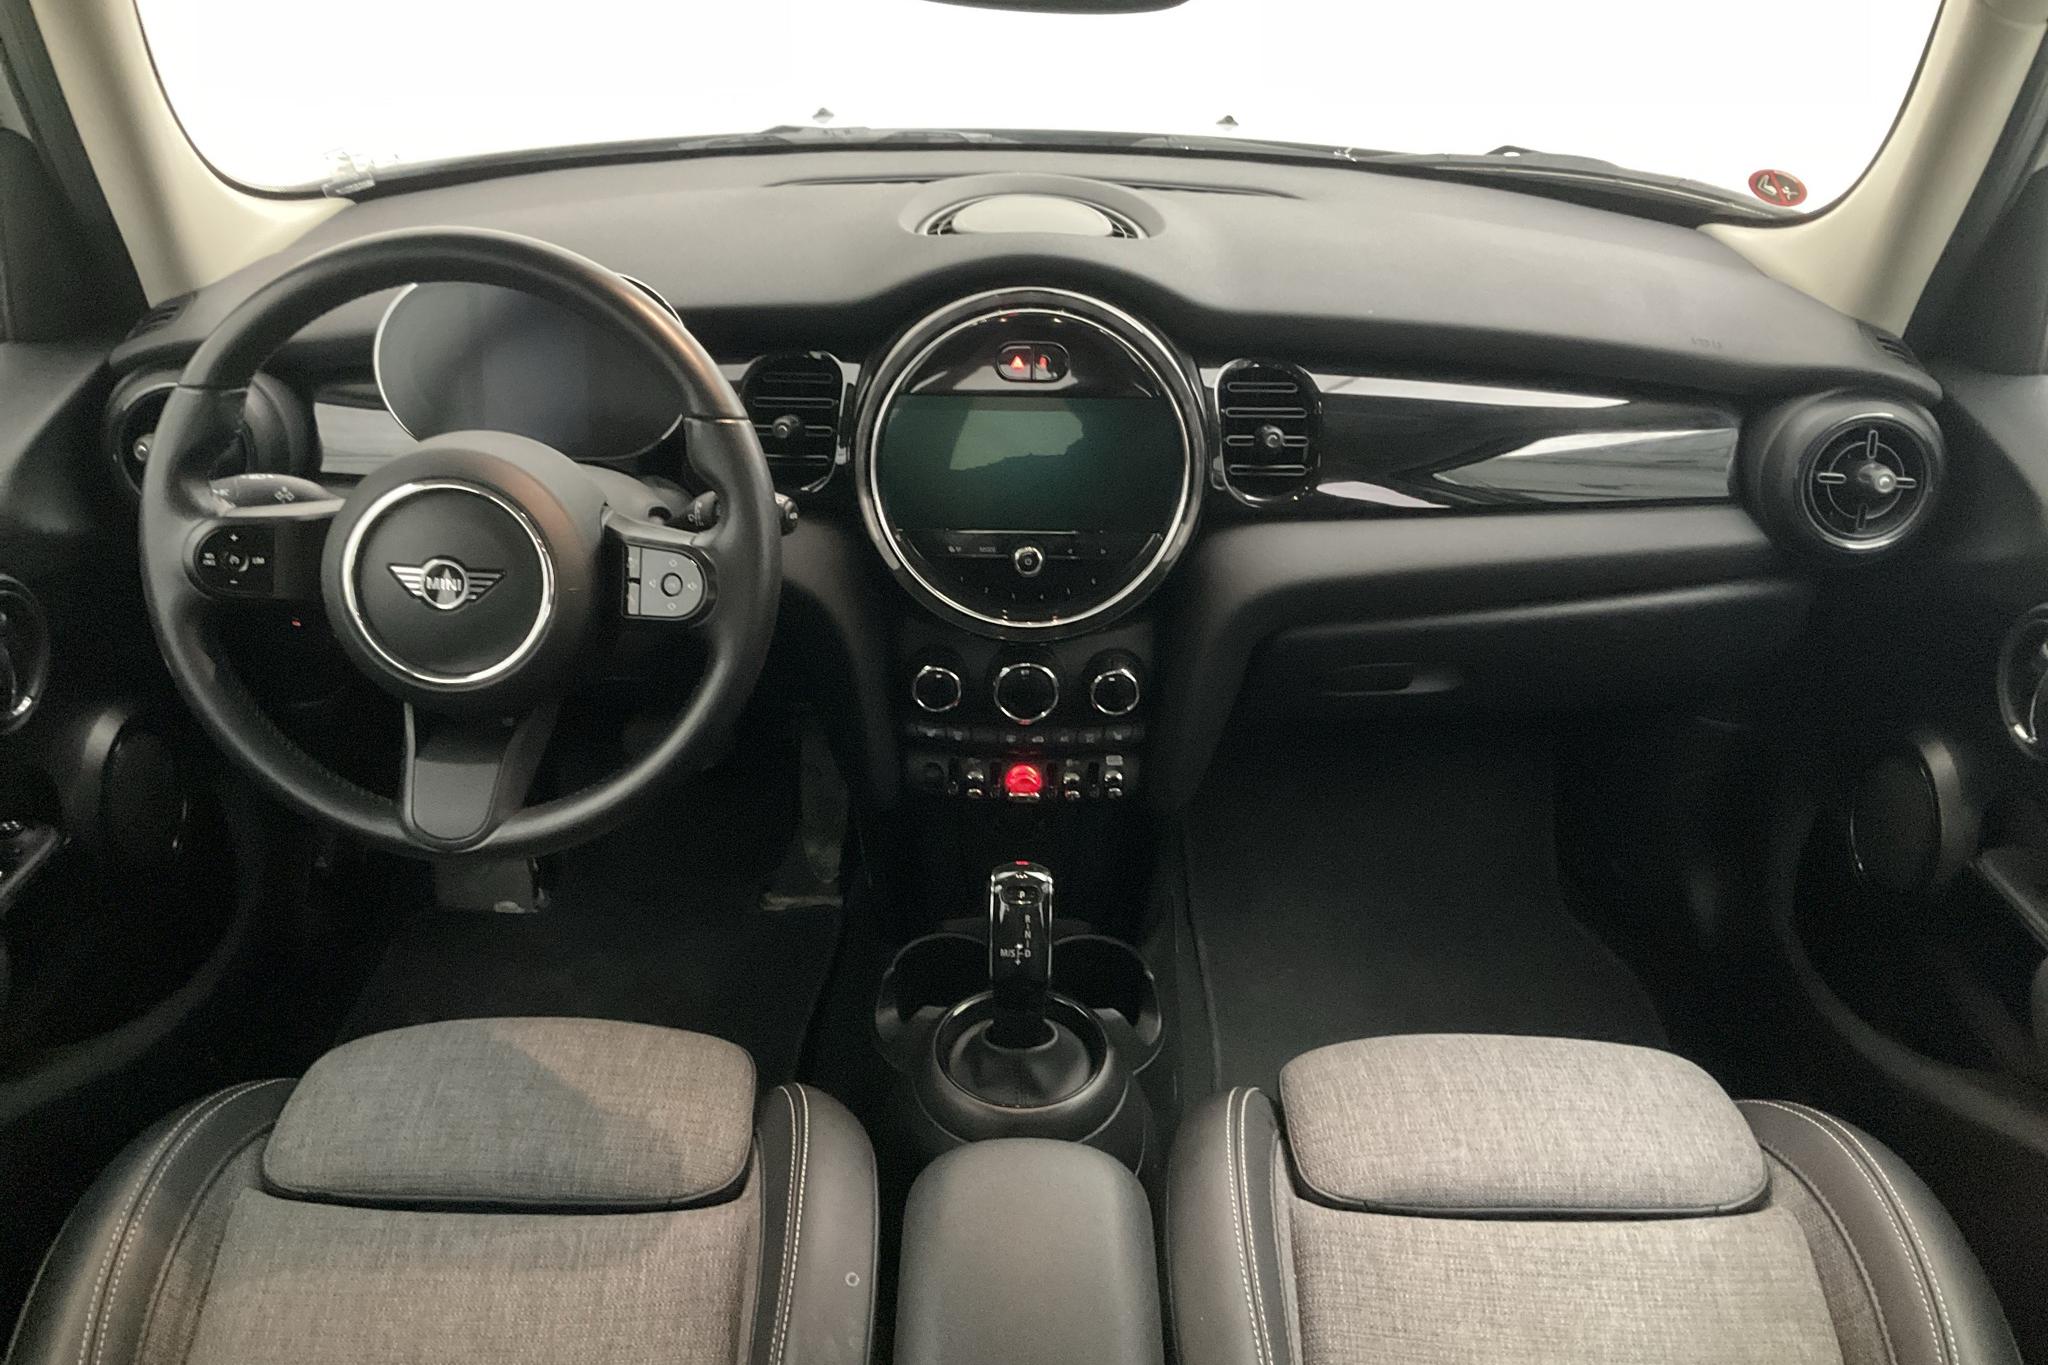 MINI Cooper Hatch 5dr, F55 LCI (136hk) - 44 560 km - Automatic - silver - 2022